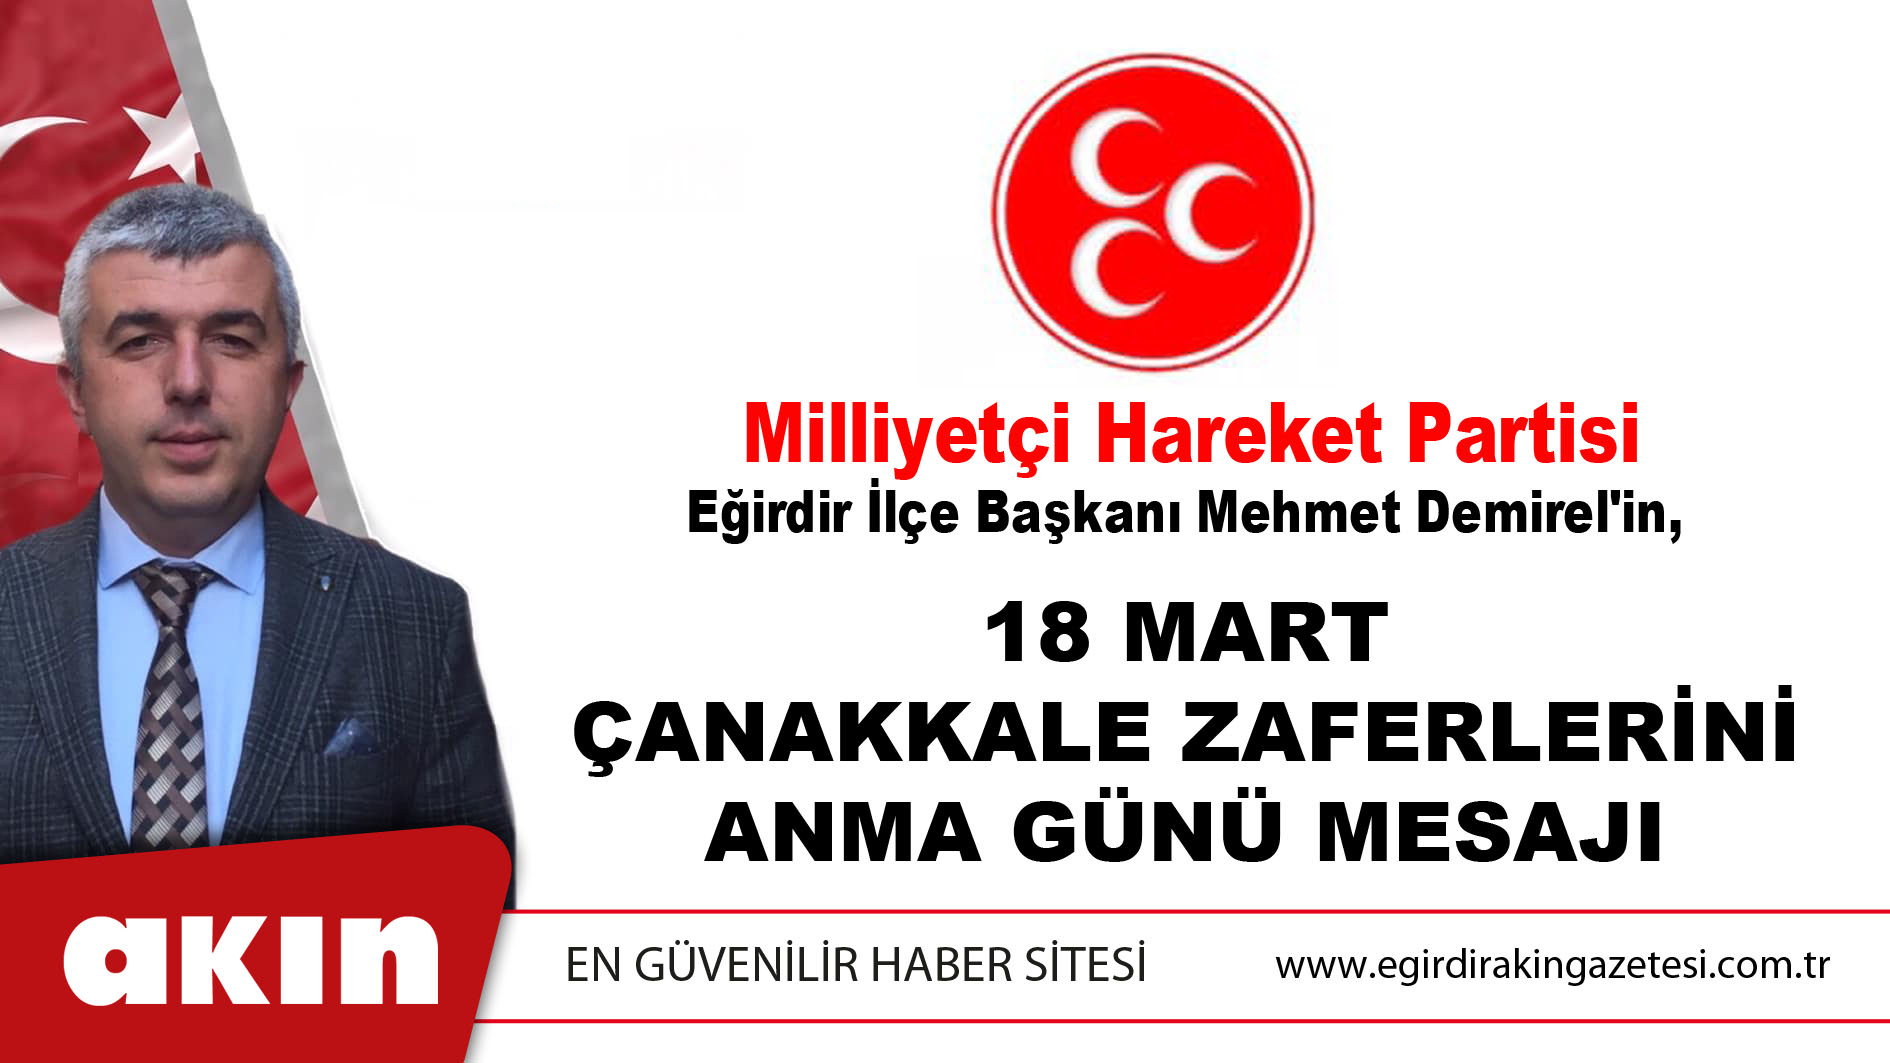 MHP Eğirdir İlçe Başkanı Mehmet Demirel'in,  18 Mart Çanakkale Zaferlerini Anma Günü Mesajı